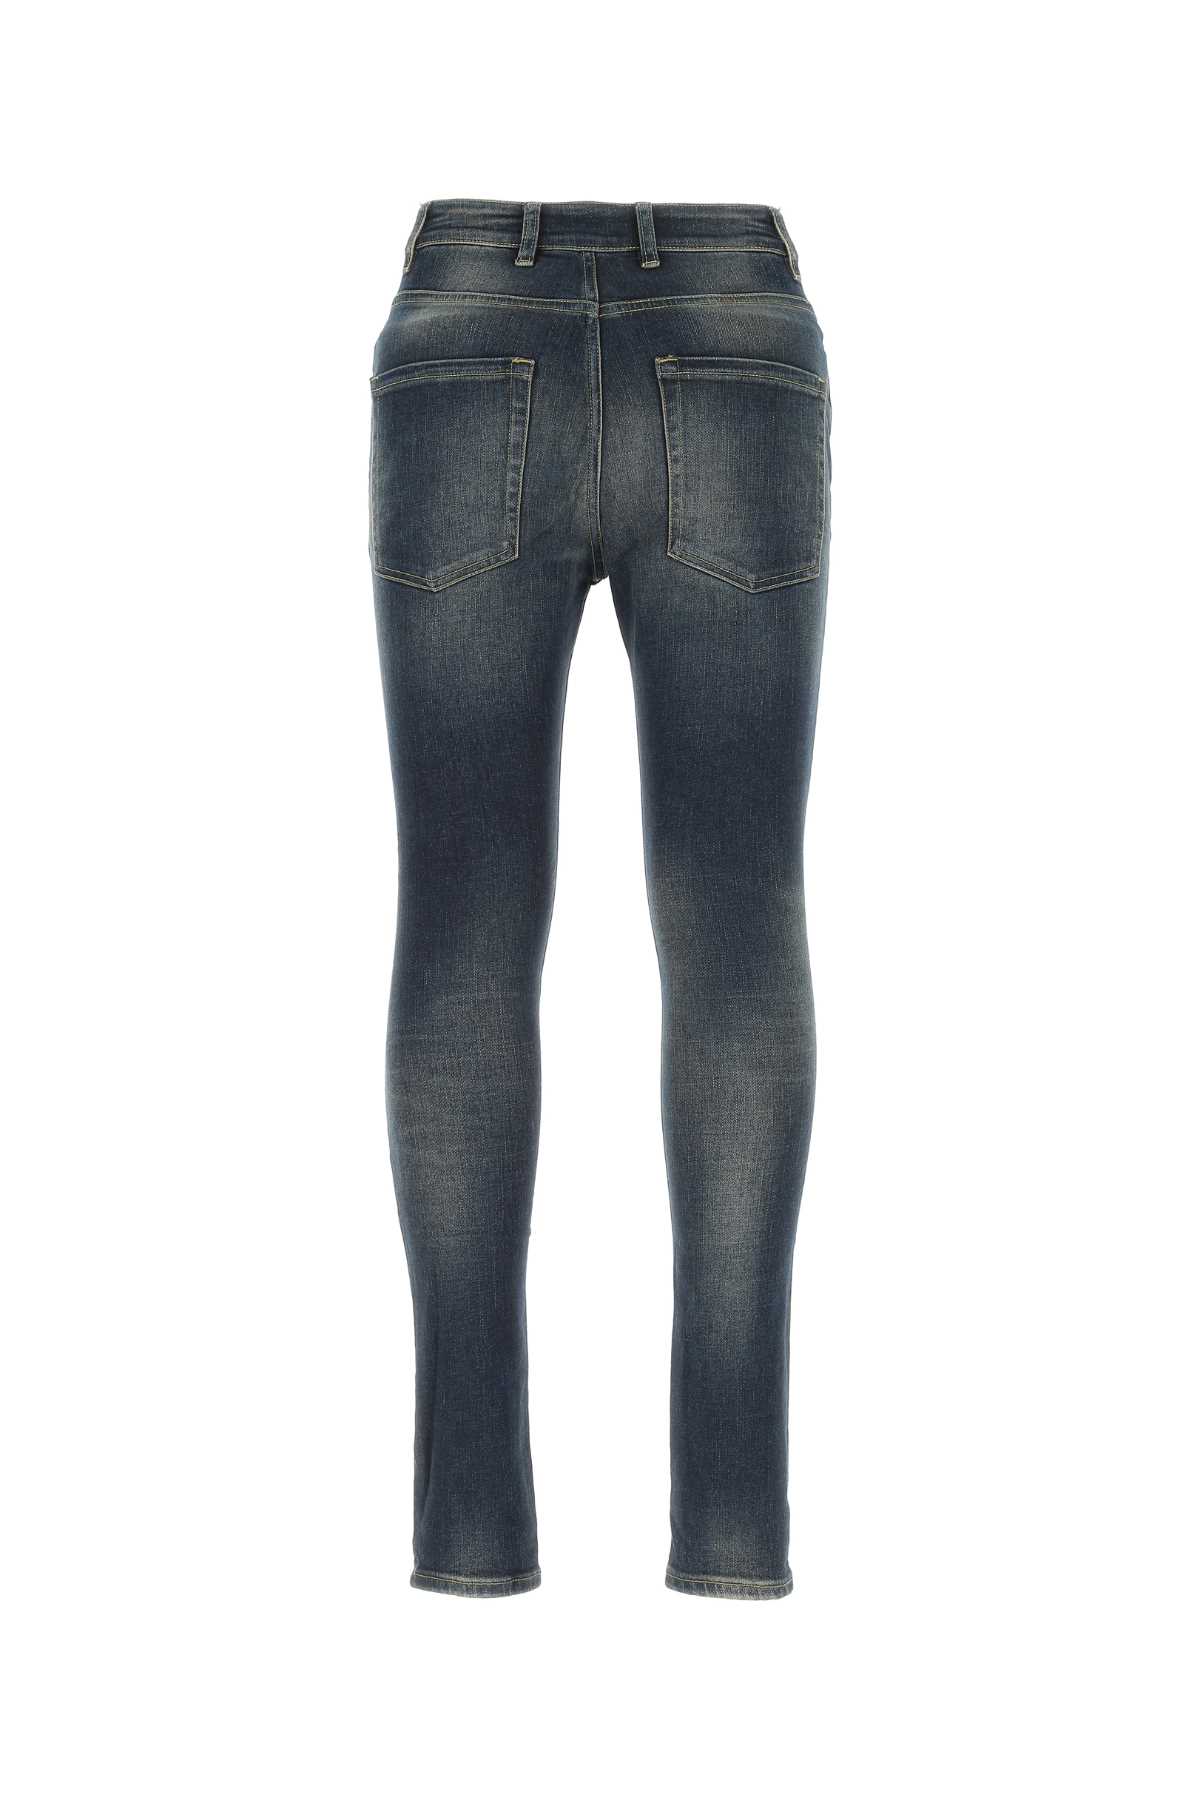 Represent Stretch Denim Essential Jeans In 176